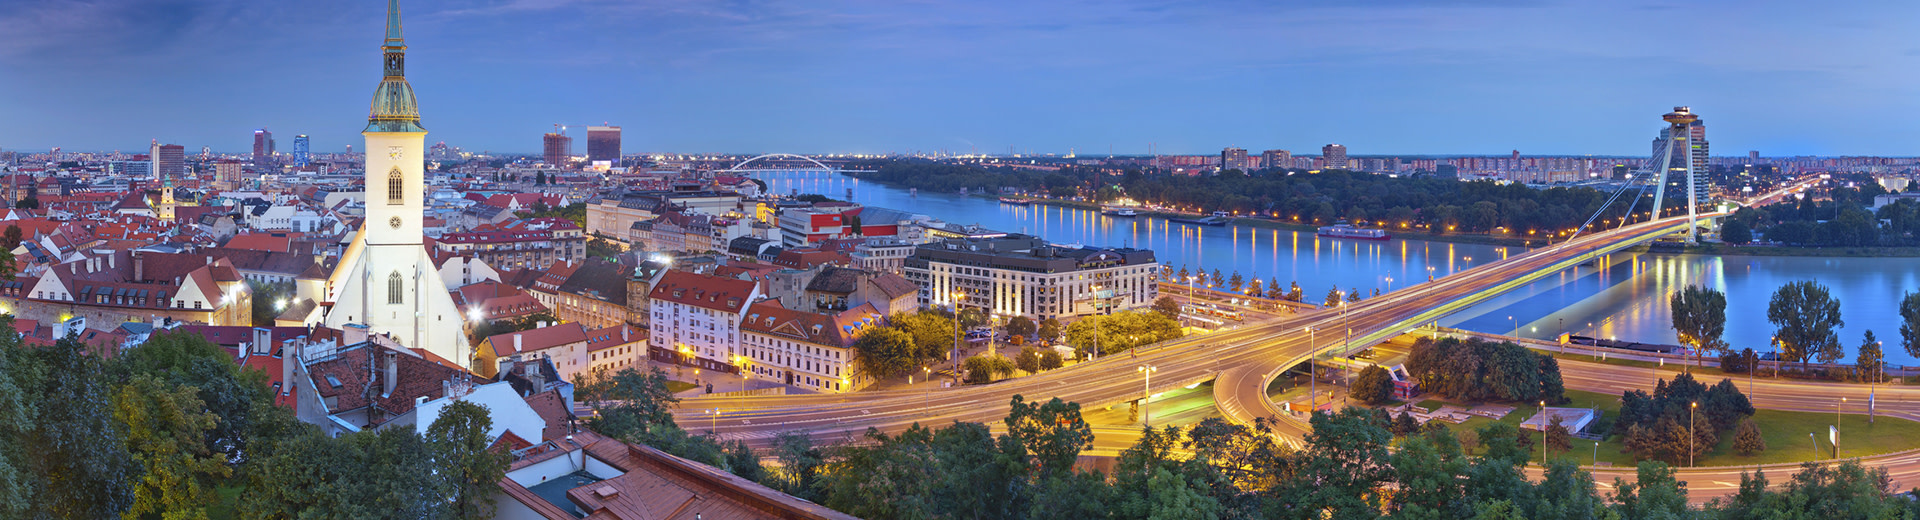 Bratislava mit berühmten und historischen Gebäuden, die vor der Donau der Flusskana umrahmt sind.